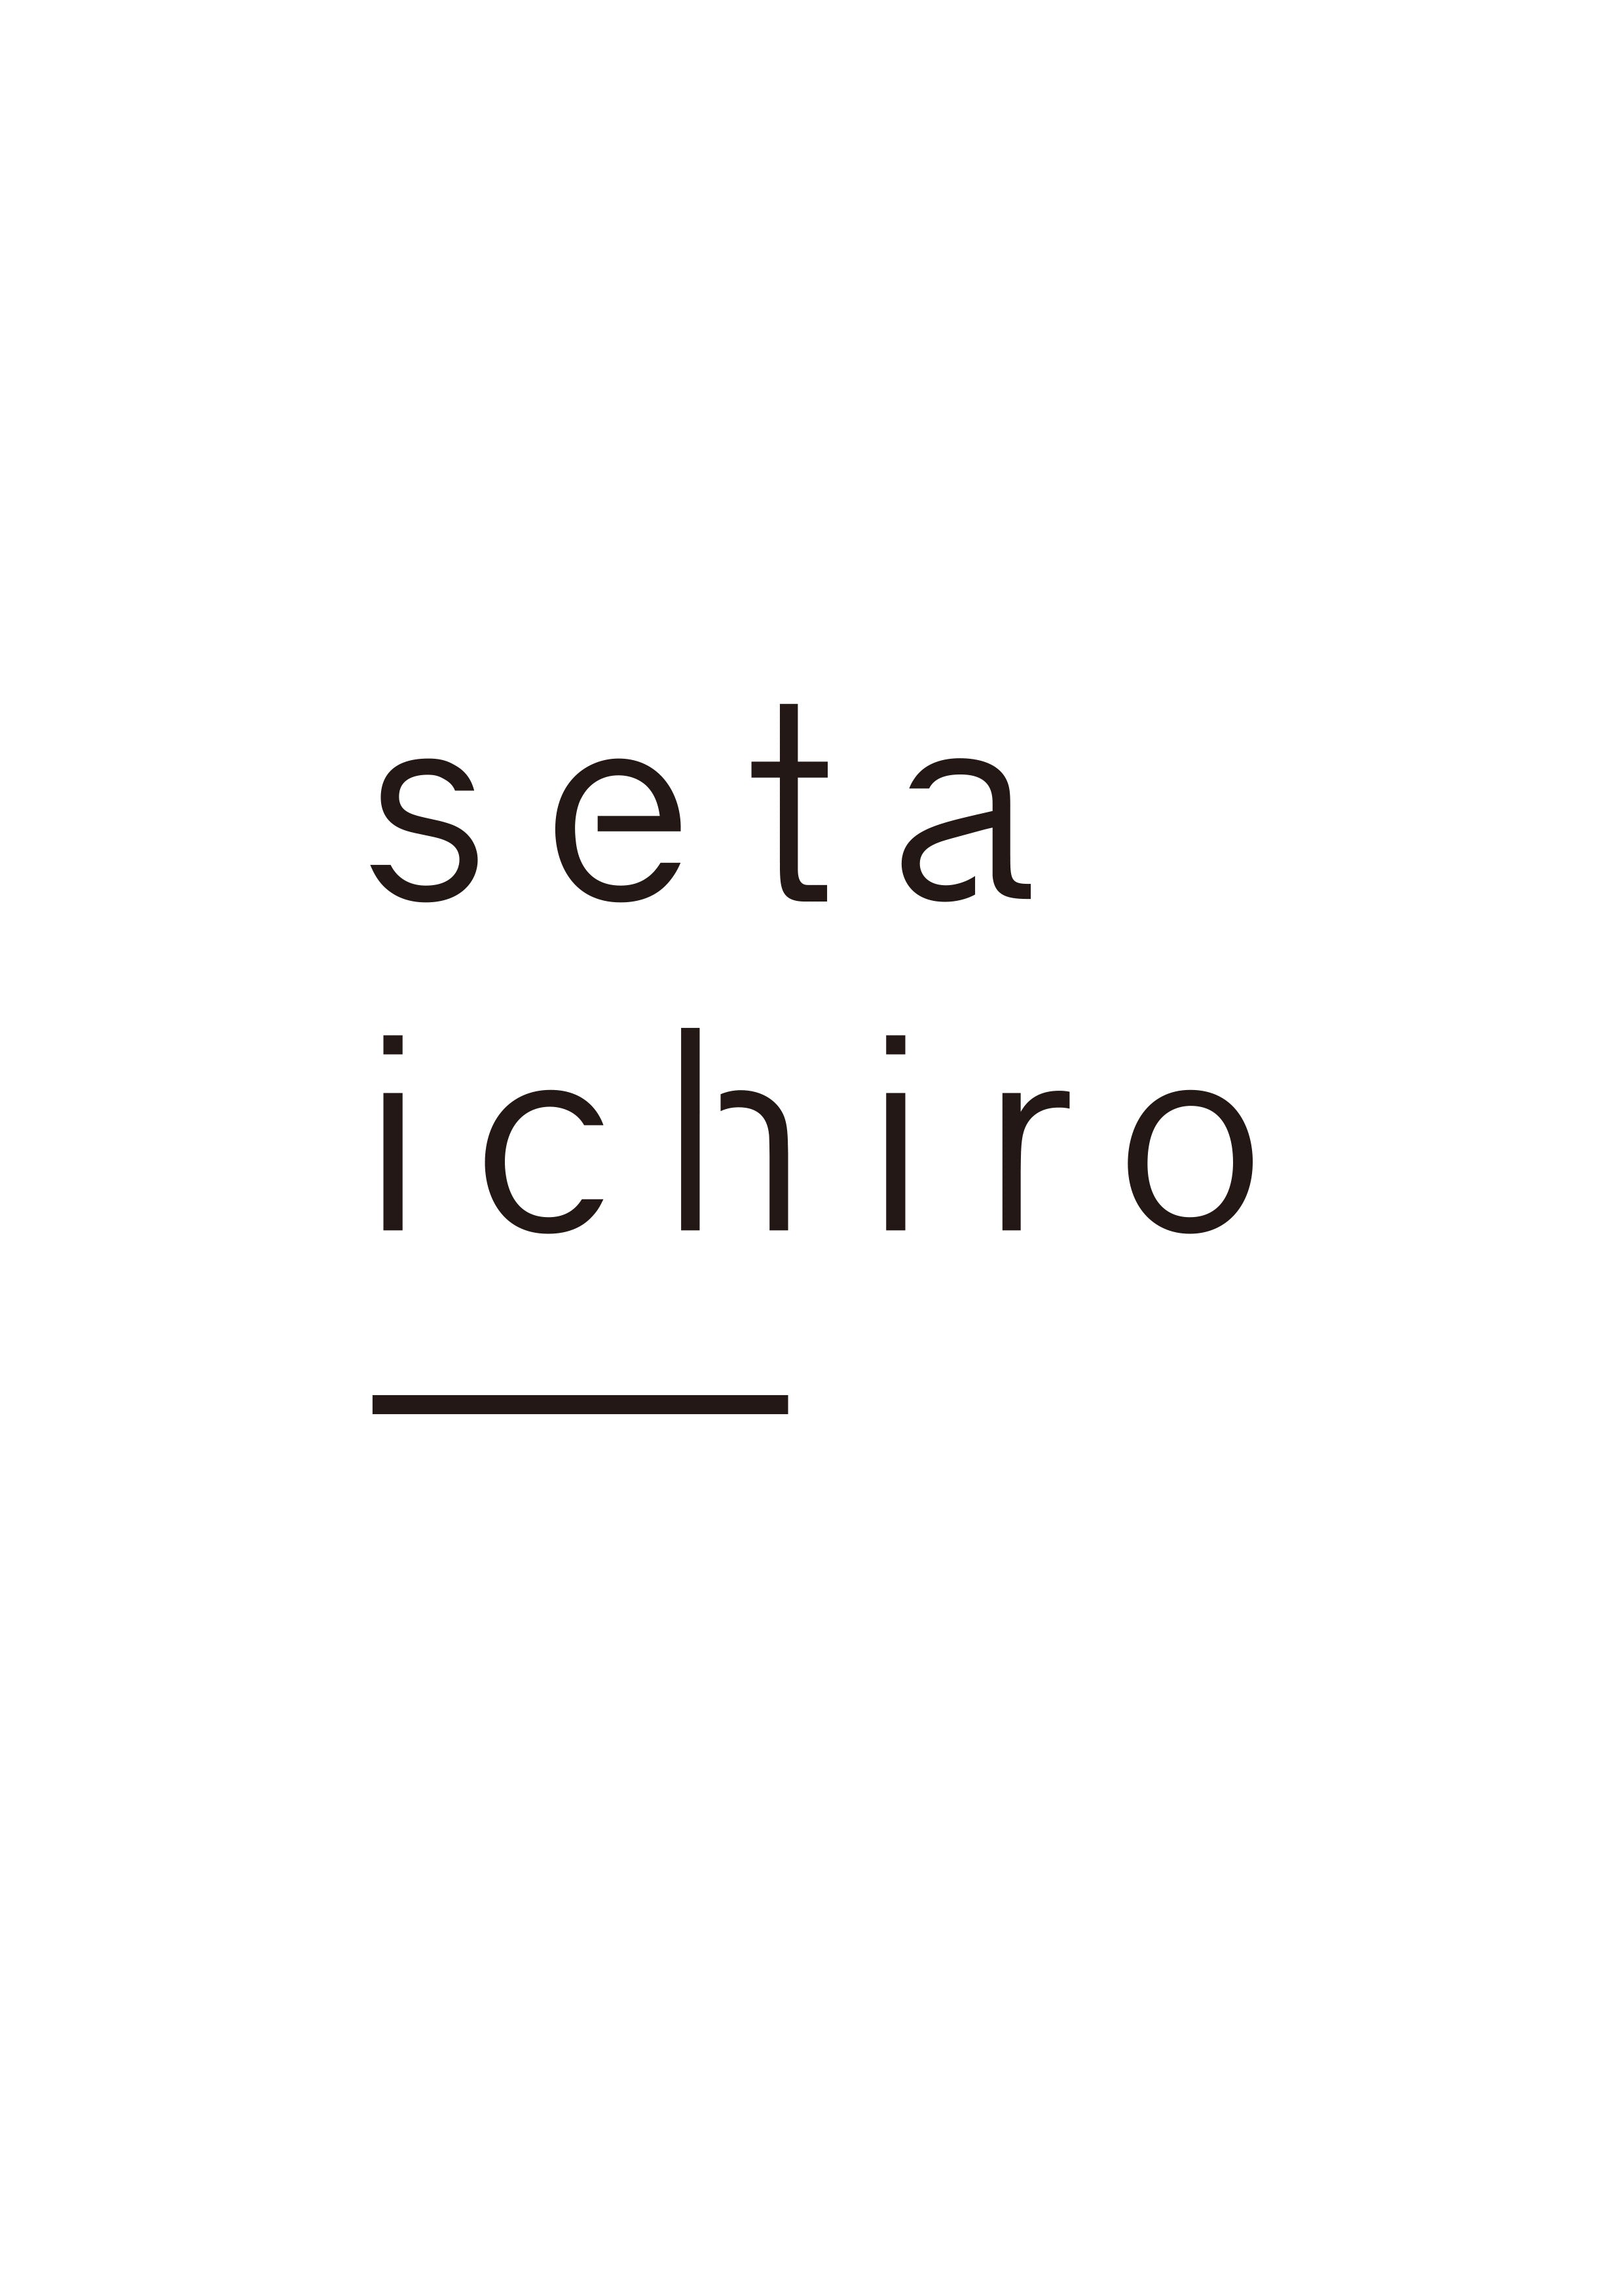 setaichiro